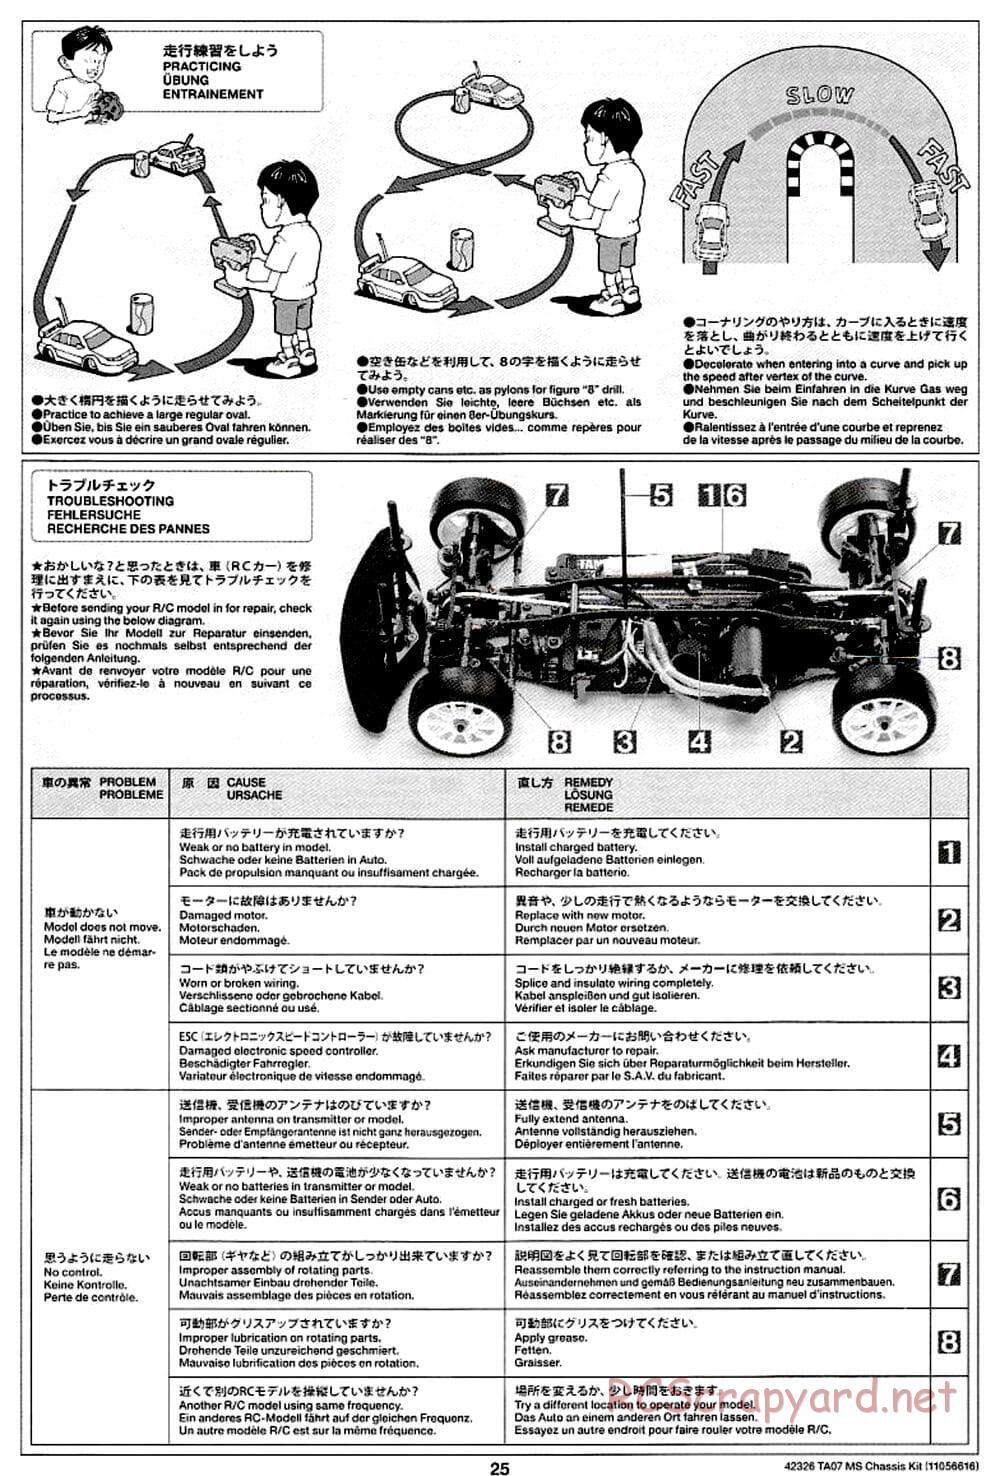 Tamiya - TA07 MS Chassis - Manual - Page 25